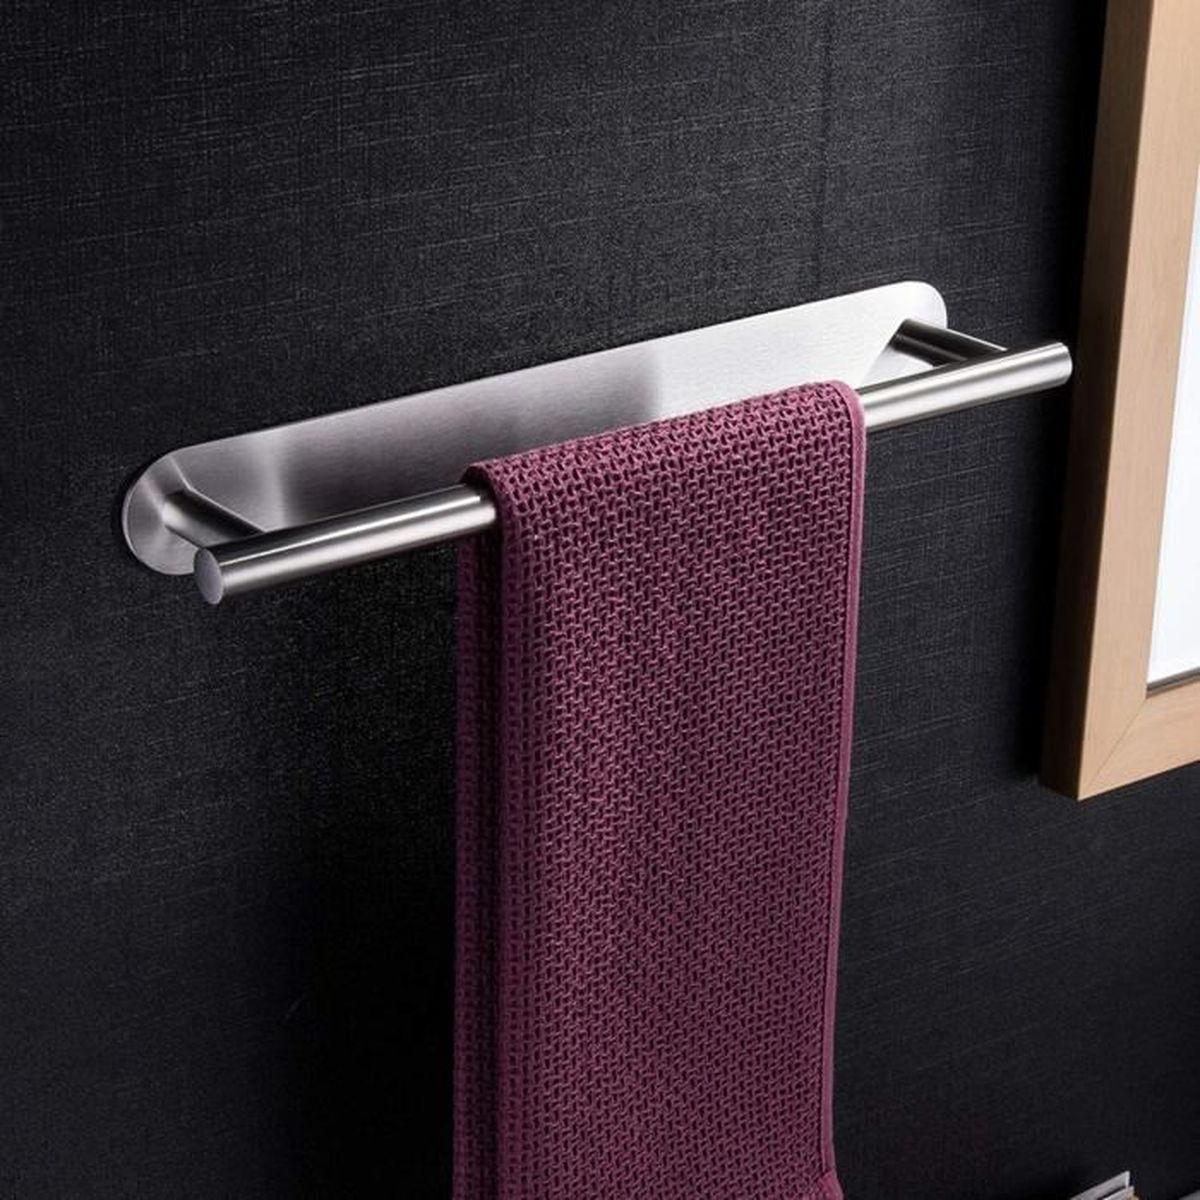 Porte-serviettes auto-adhésif pour porte-serviettes de salle de bains en acier